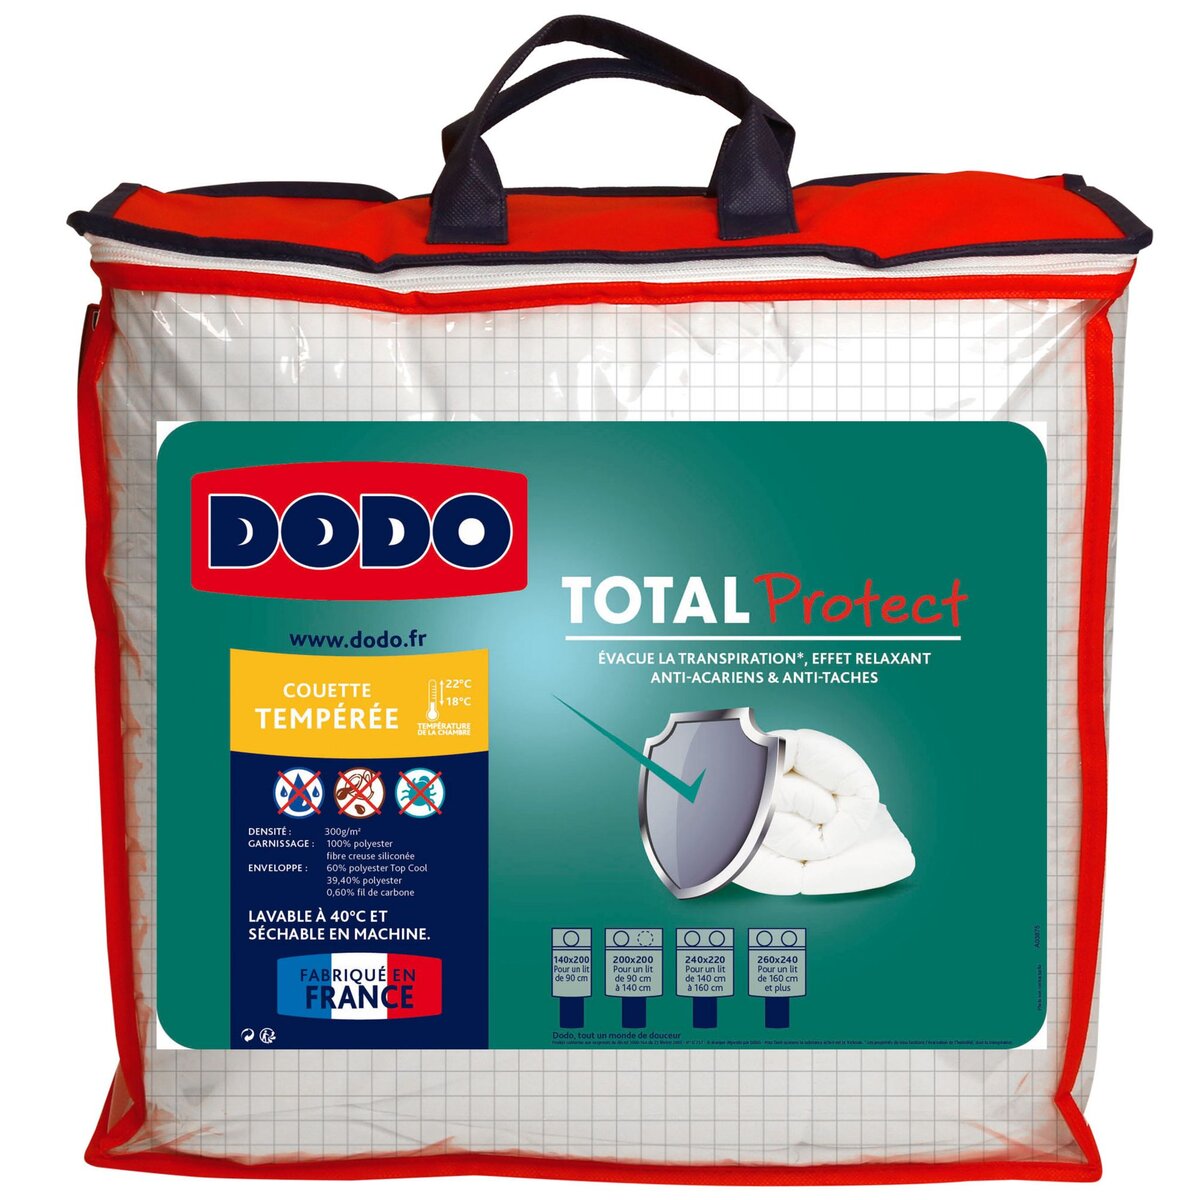 DODO Couette tempérée unie en polyester 300 g/m² TOTAL PROTECT